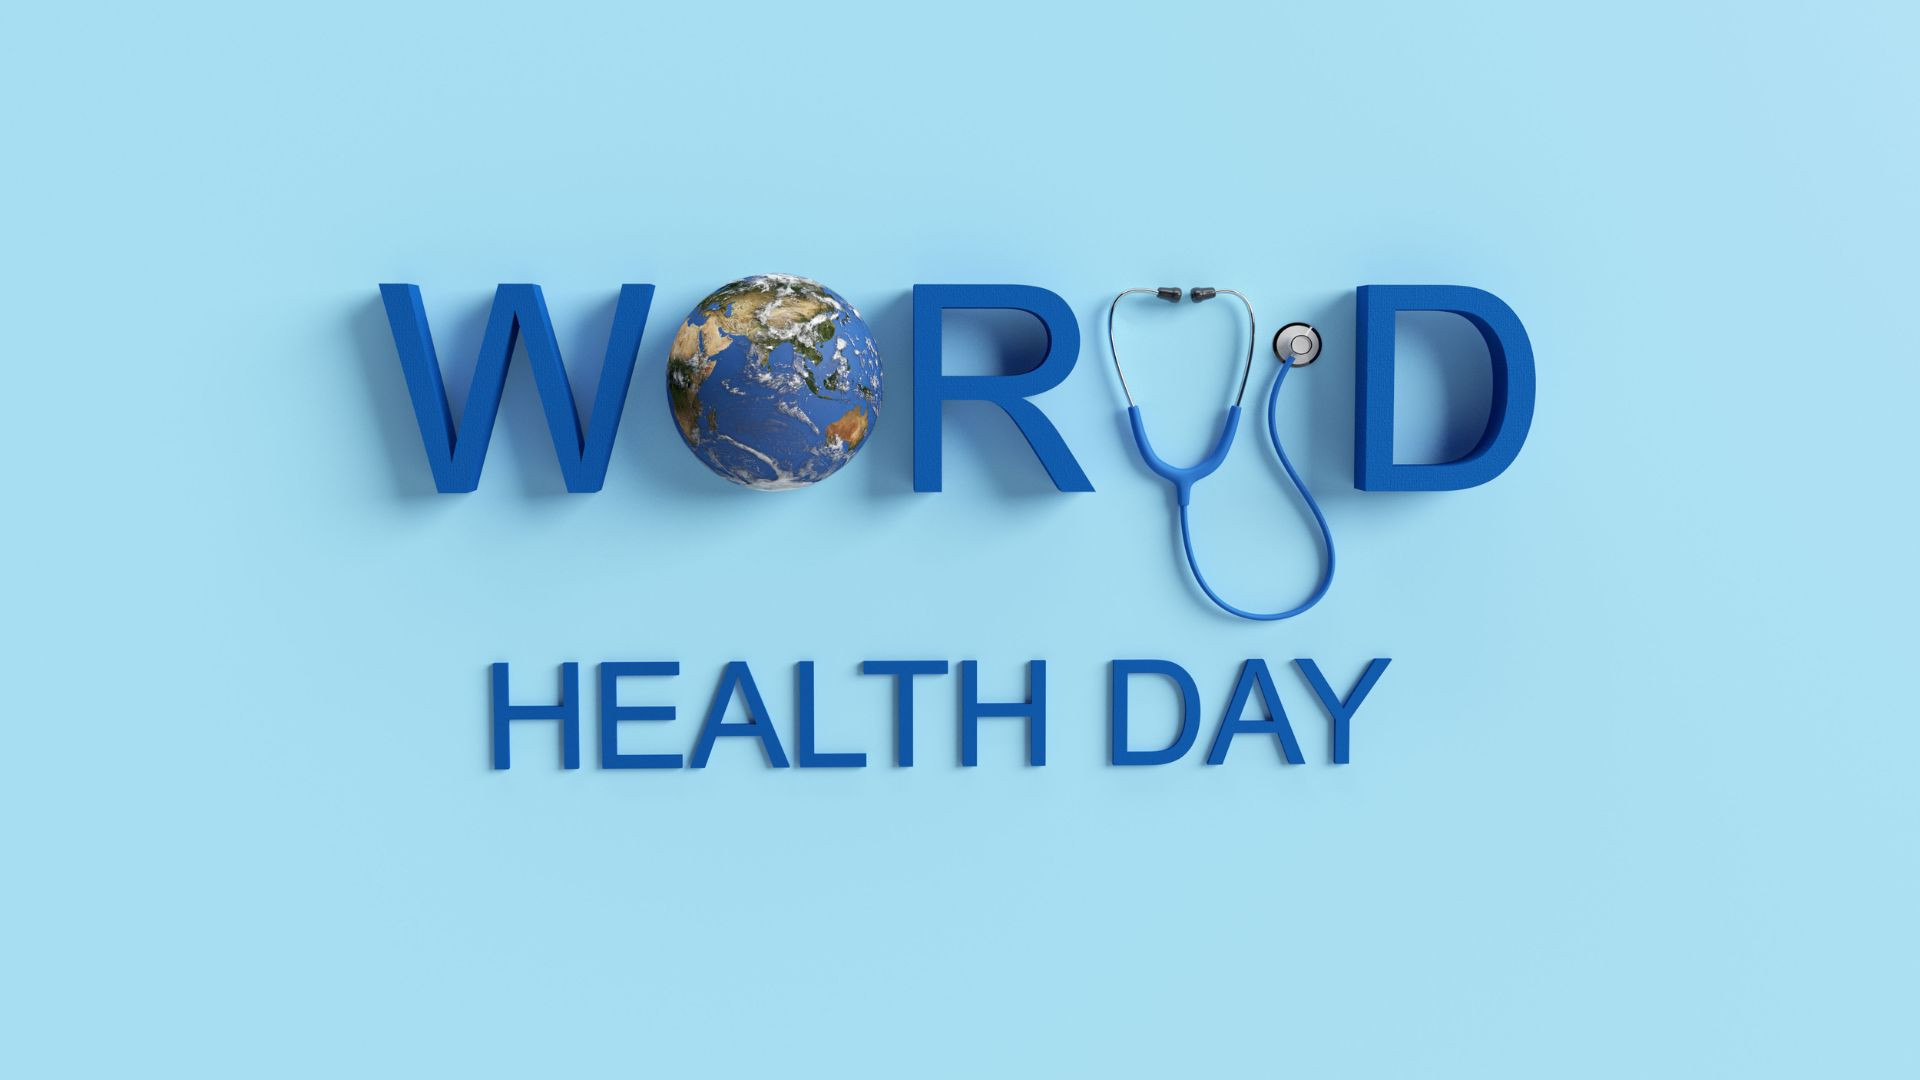 Pasaulinė sveikatos diena 04-07 